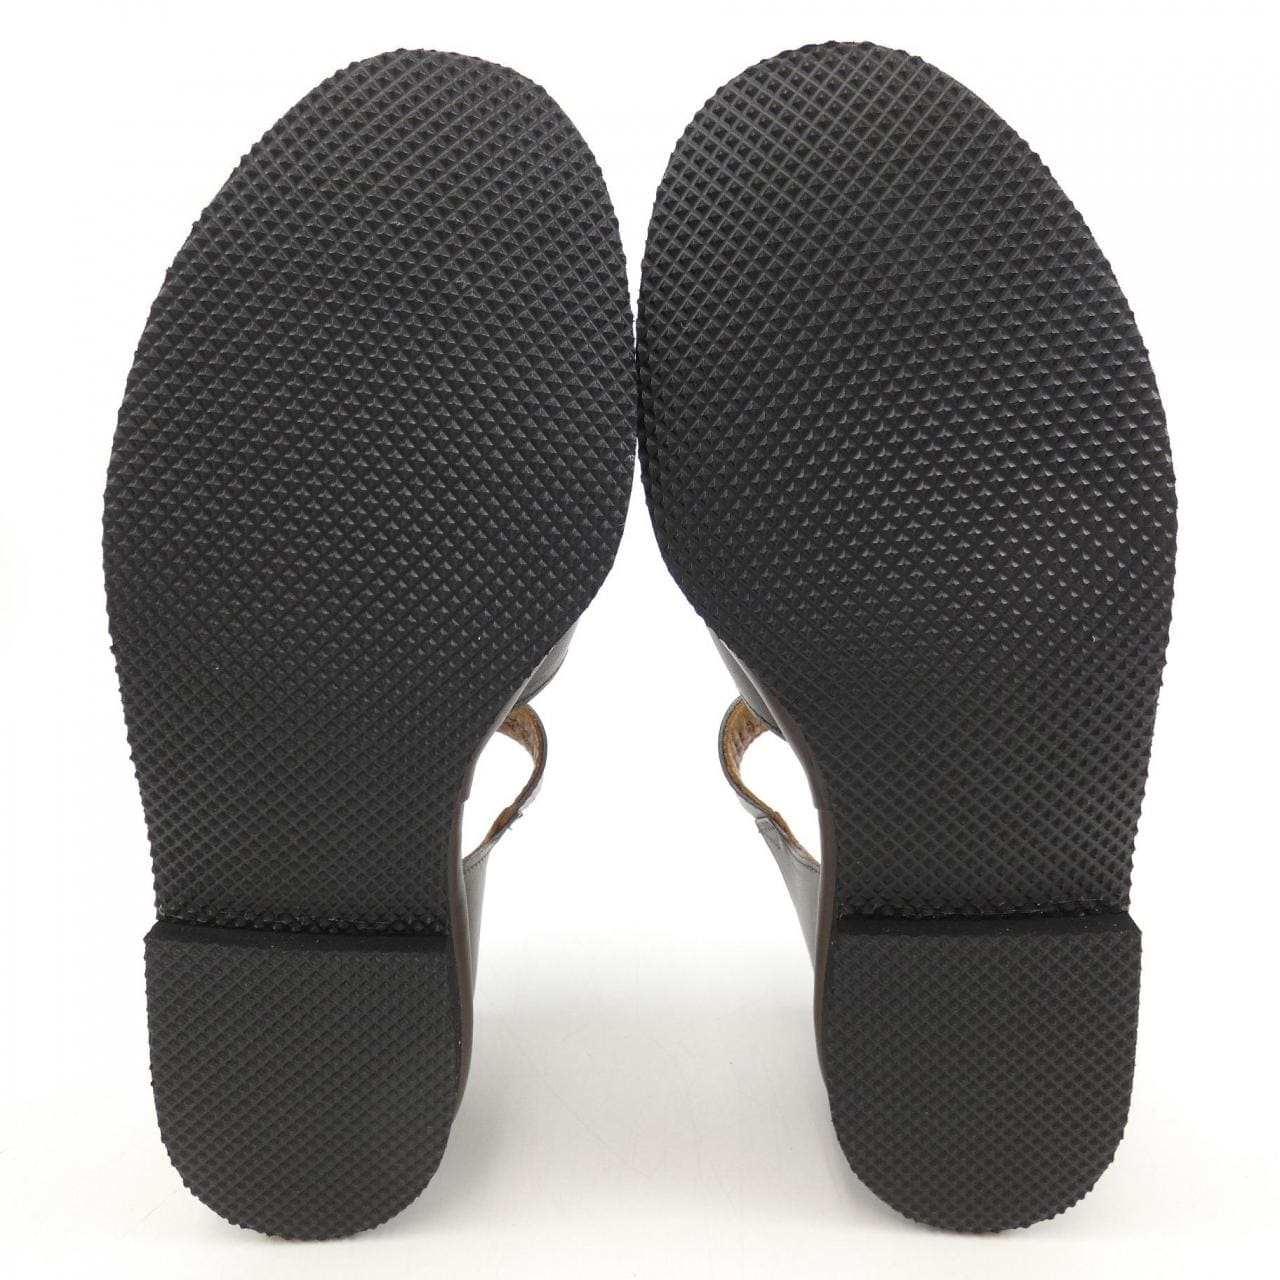 Tricker's Sandals